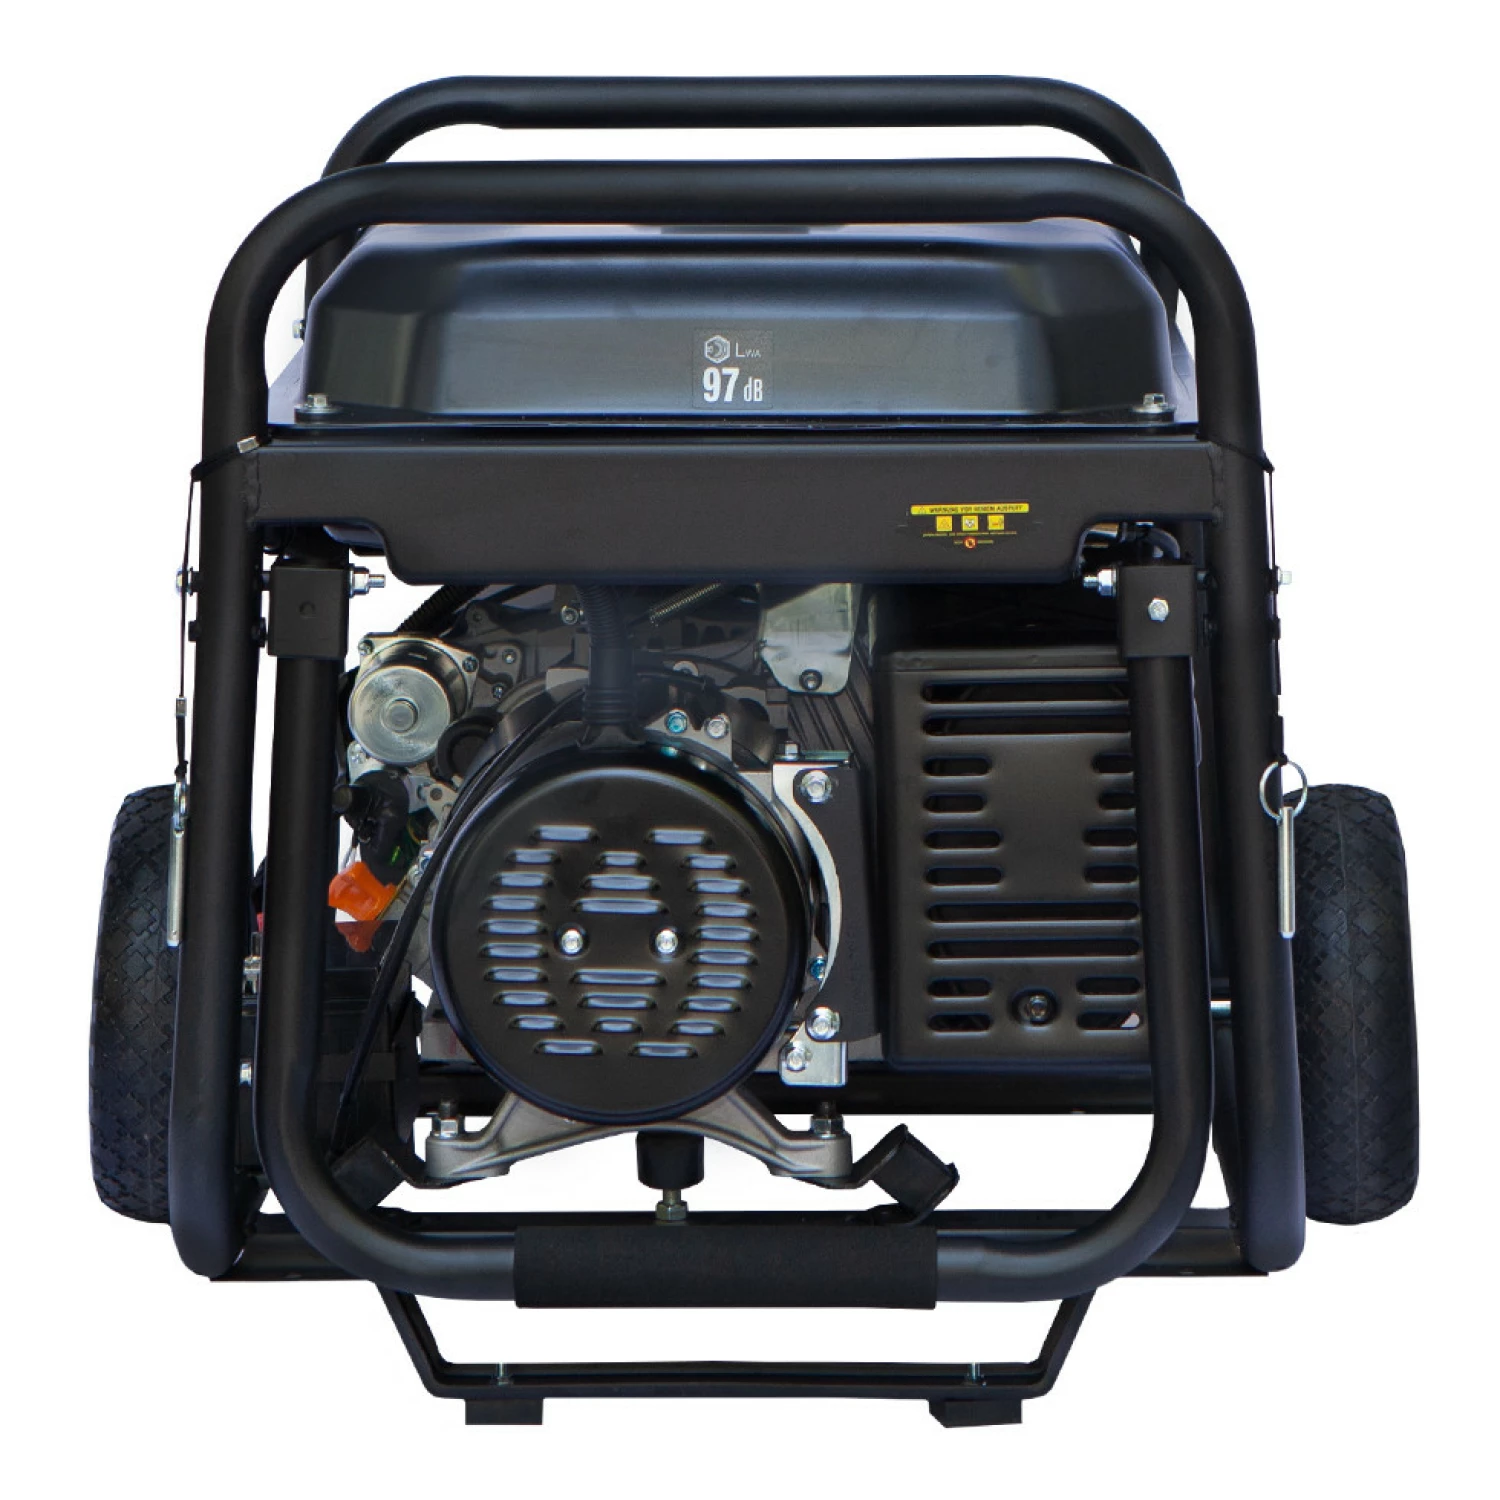 Hyundai HY8500LEK-T Benzinegenerator